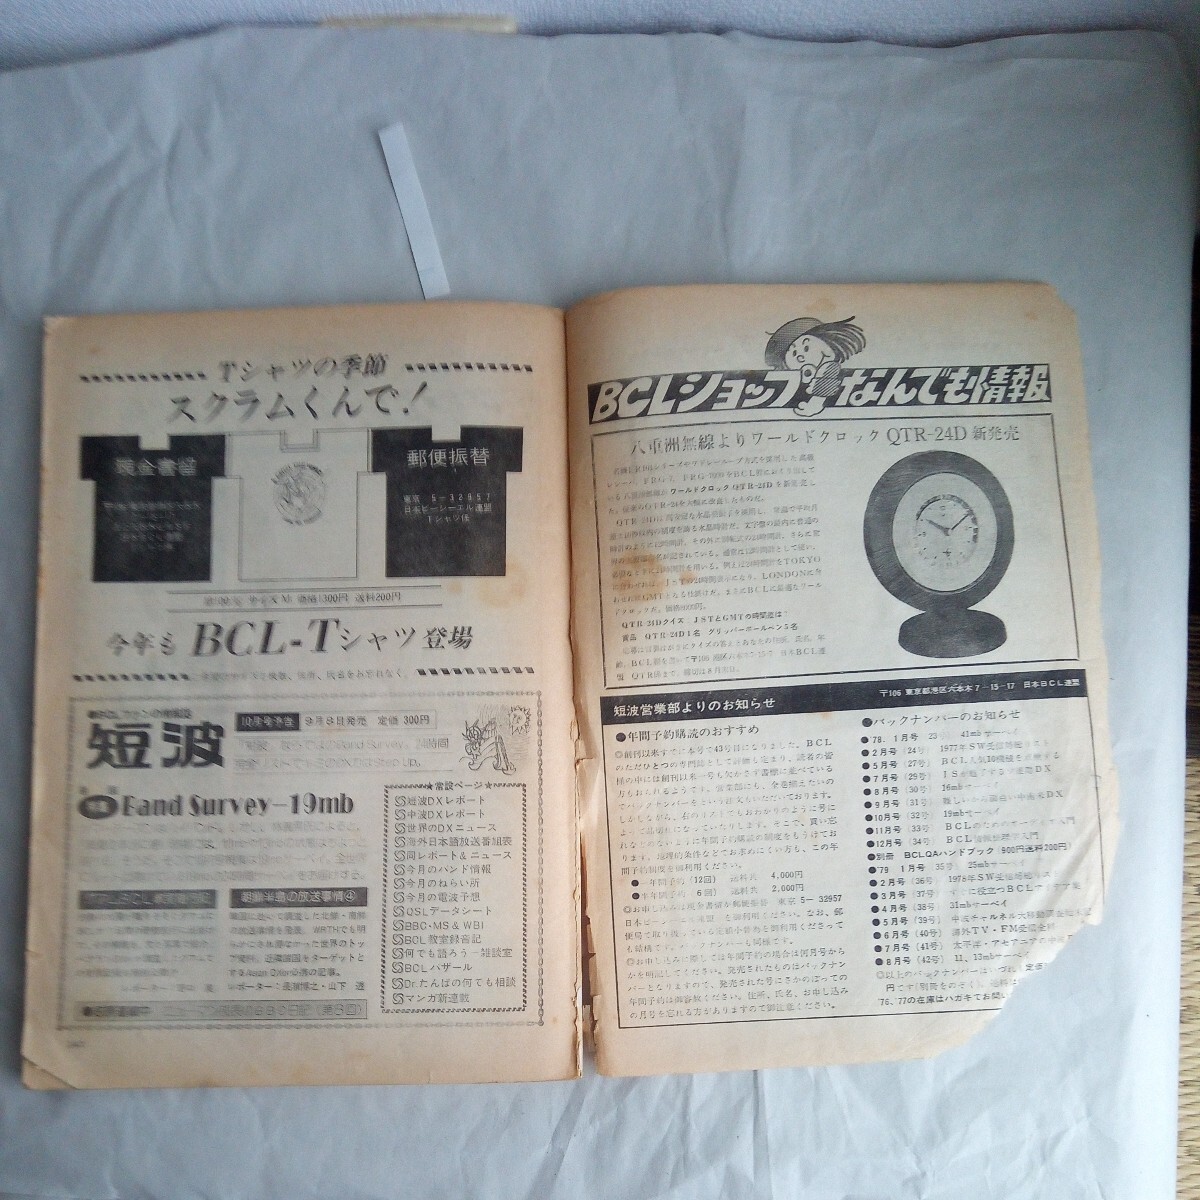 BCL вентилятор. информация журнал короткие волны 1979 год 9 месяц номер Showa Retro книга